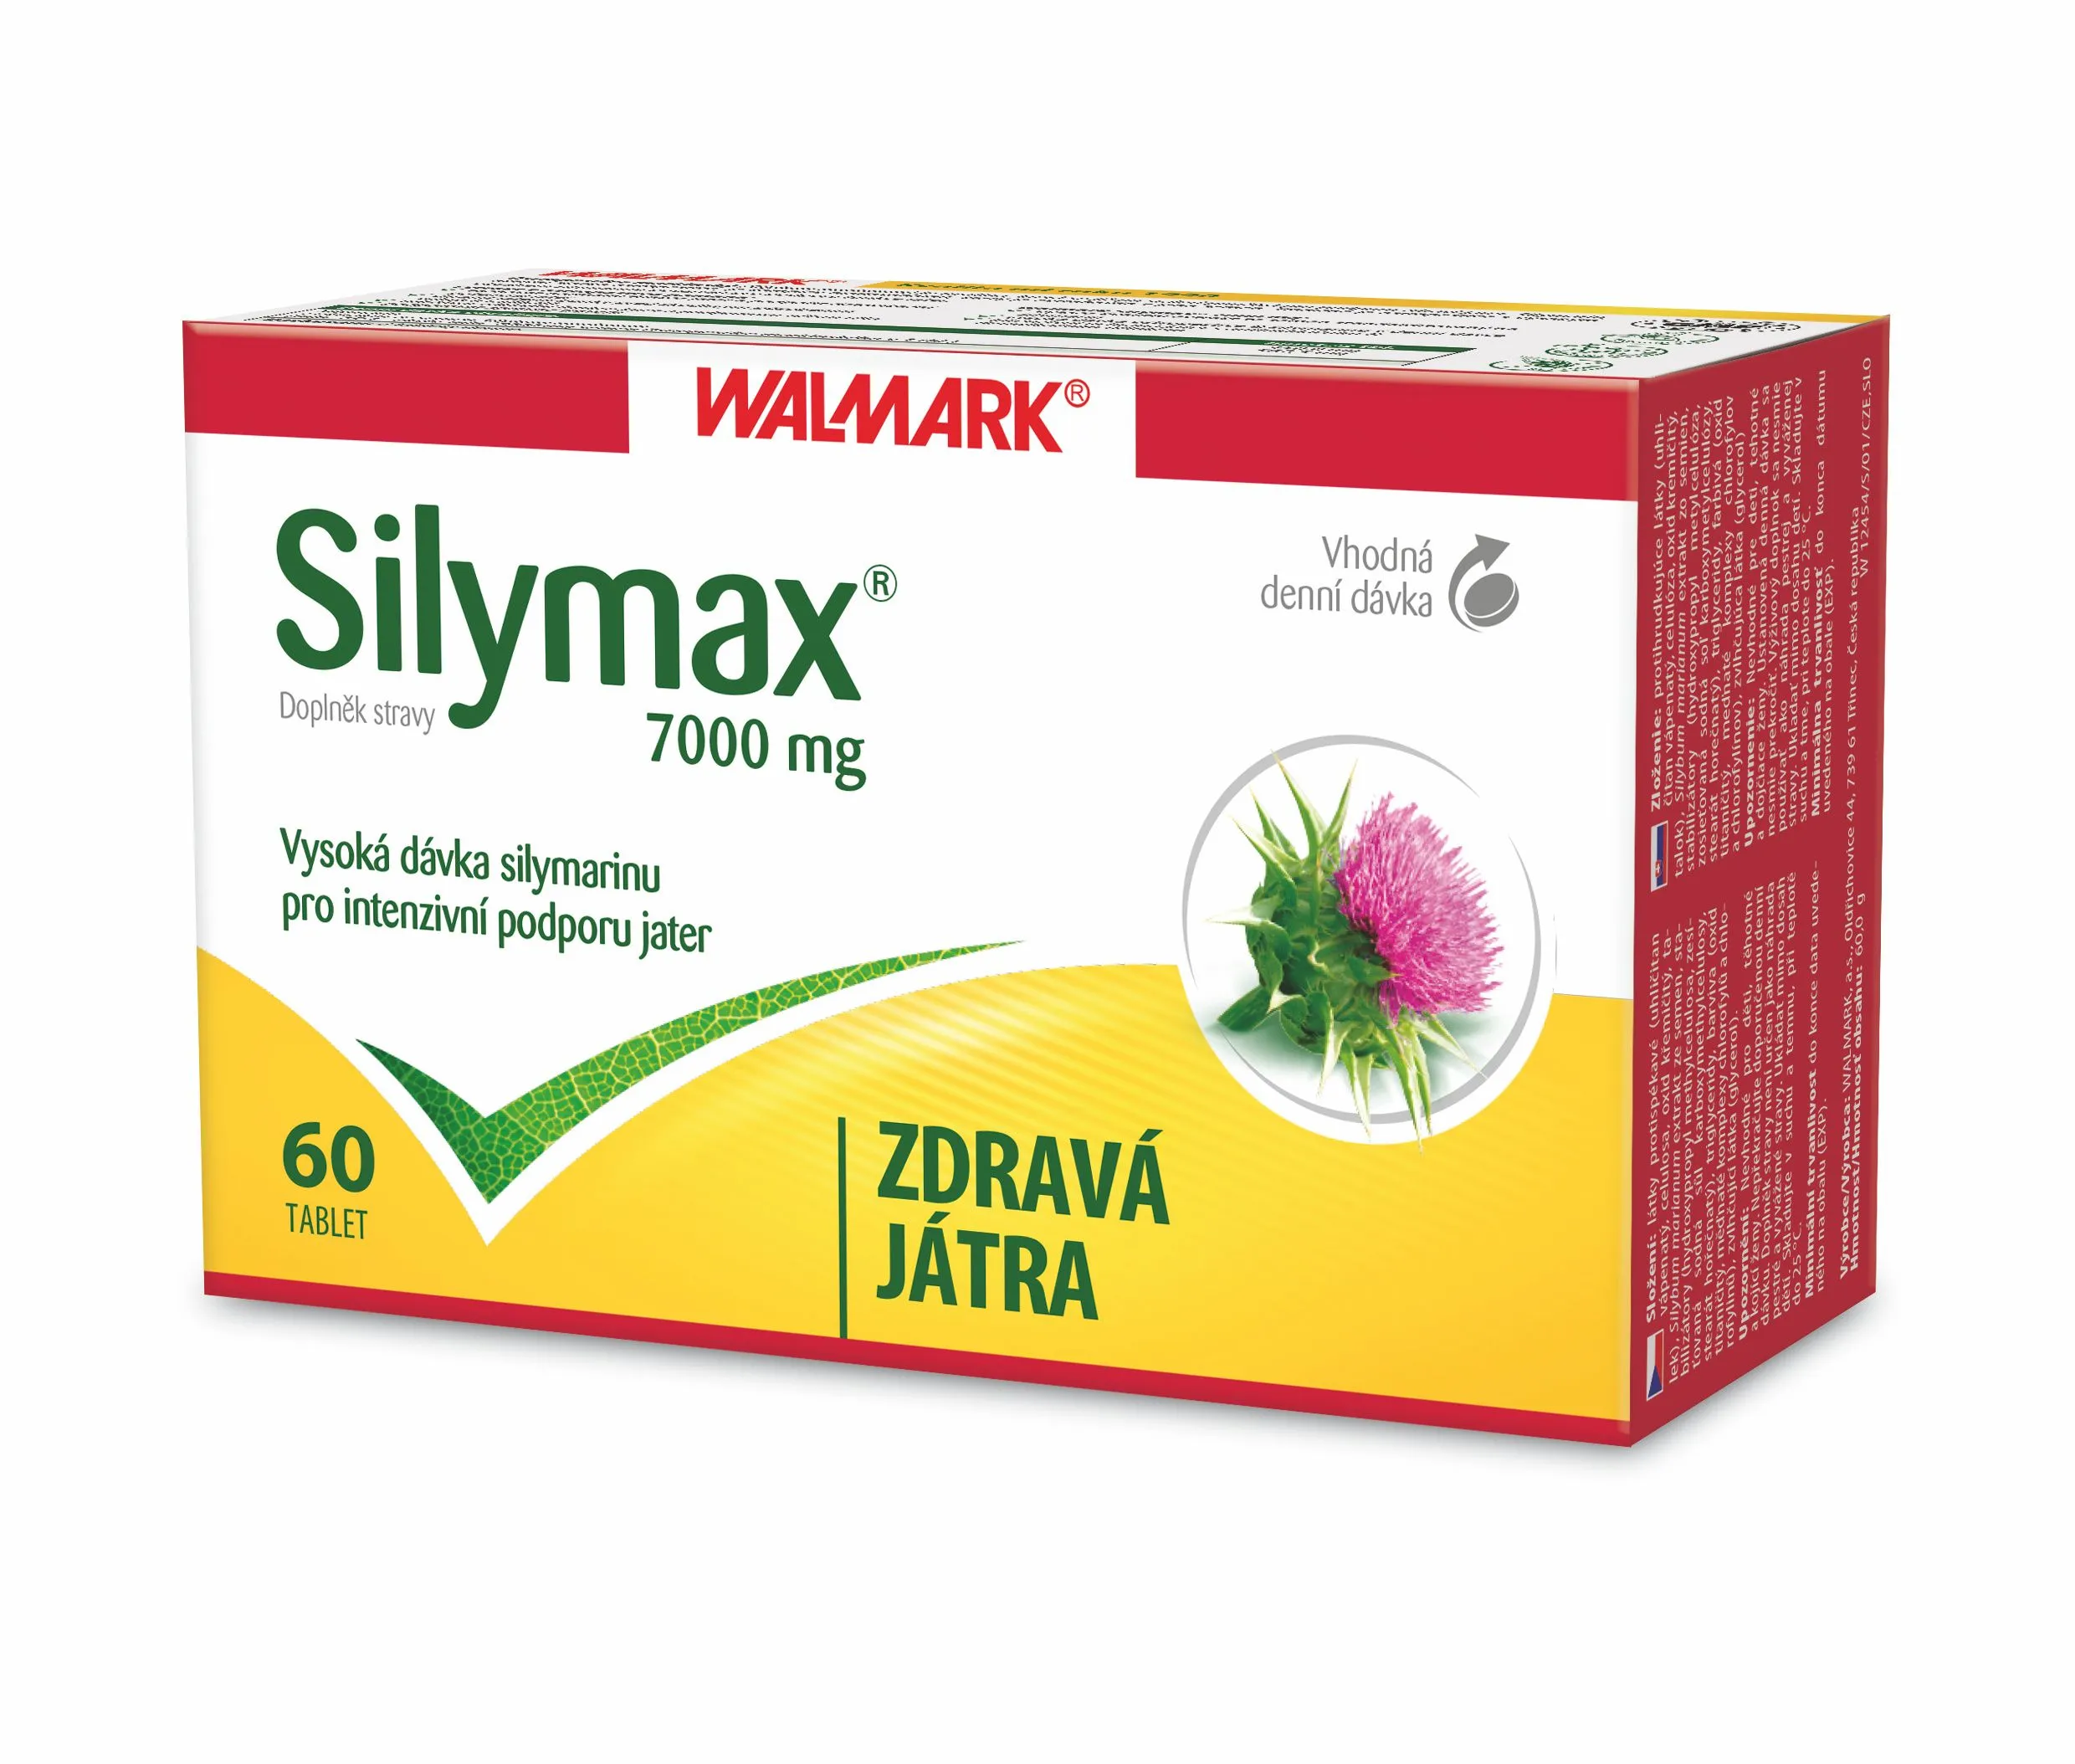 Walmark Silymax 7000 mg 60 tablet